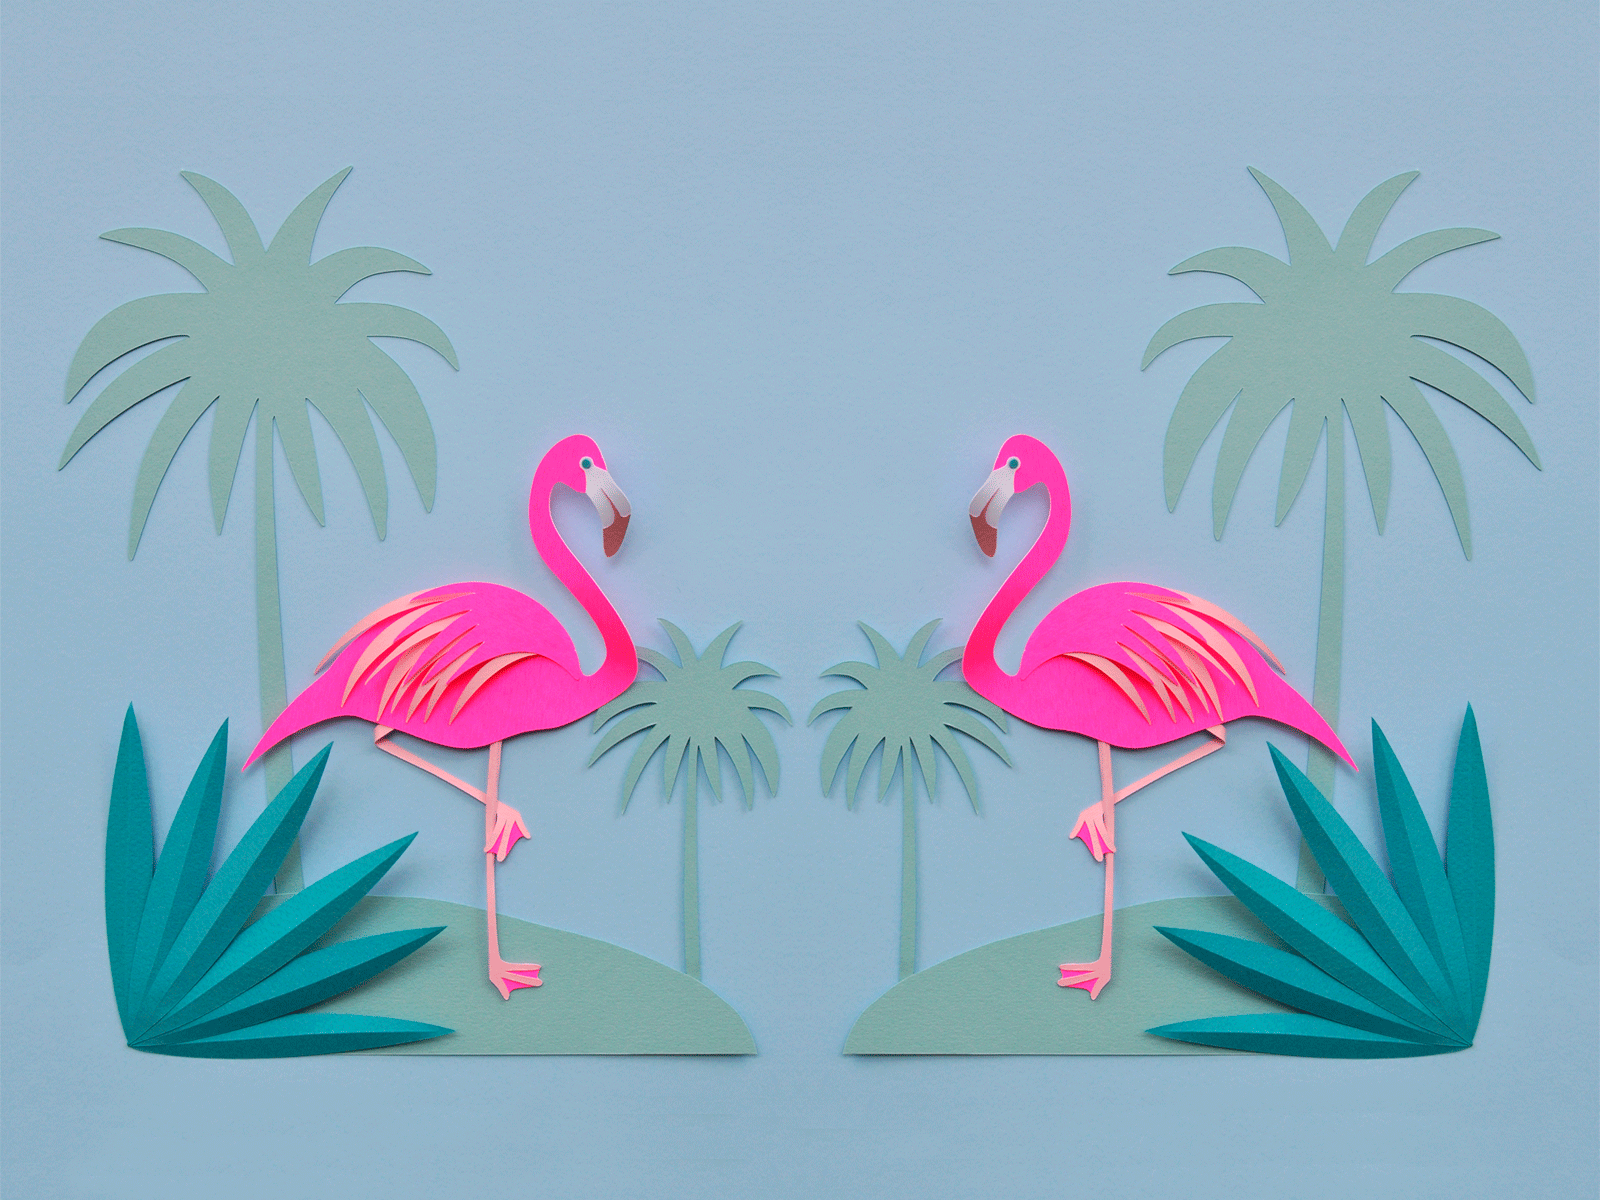 45+] Free Flamingo Wallpaper - WallpaperSafari